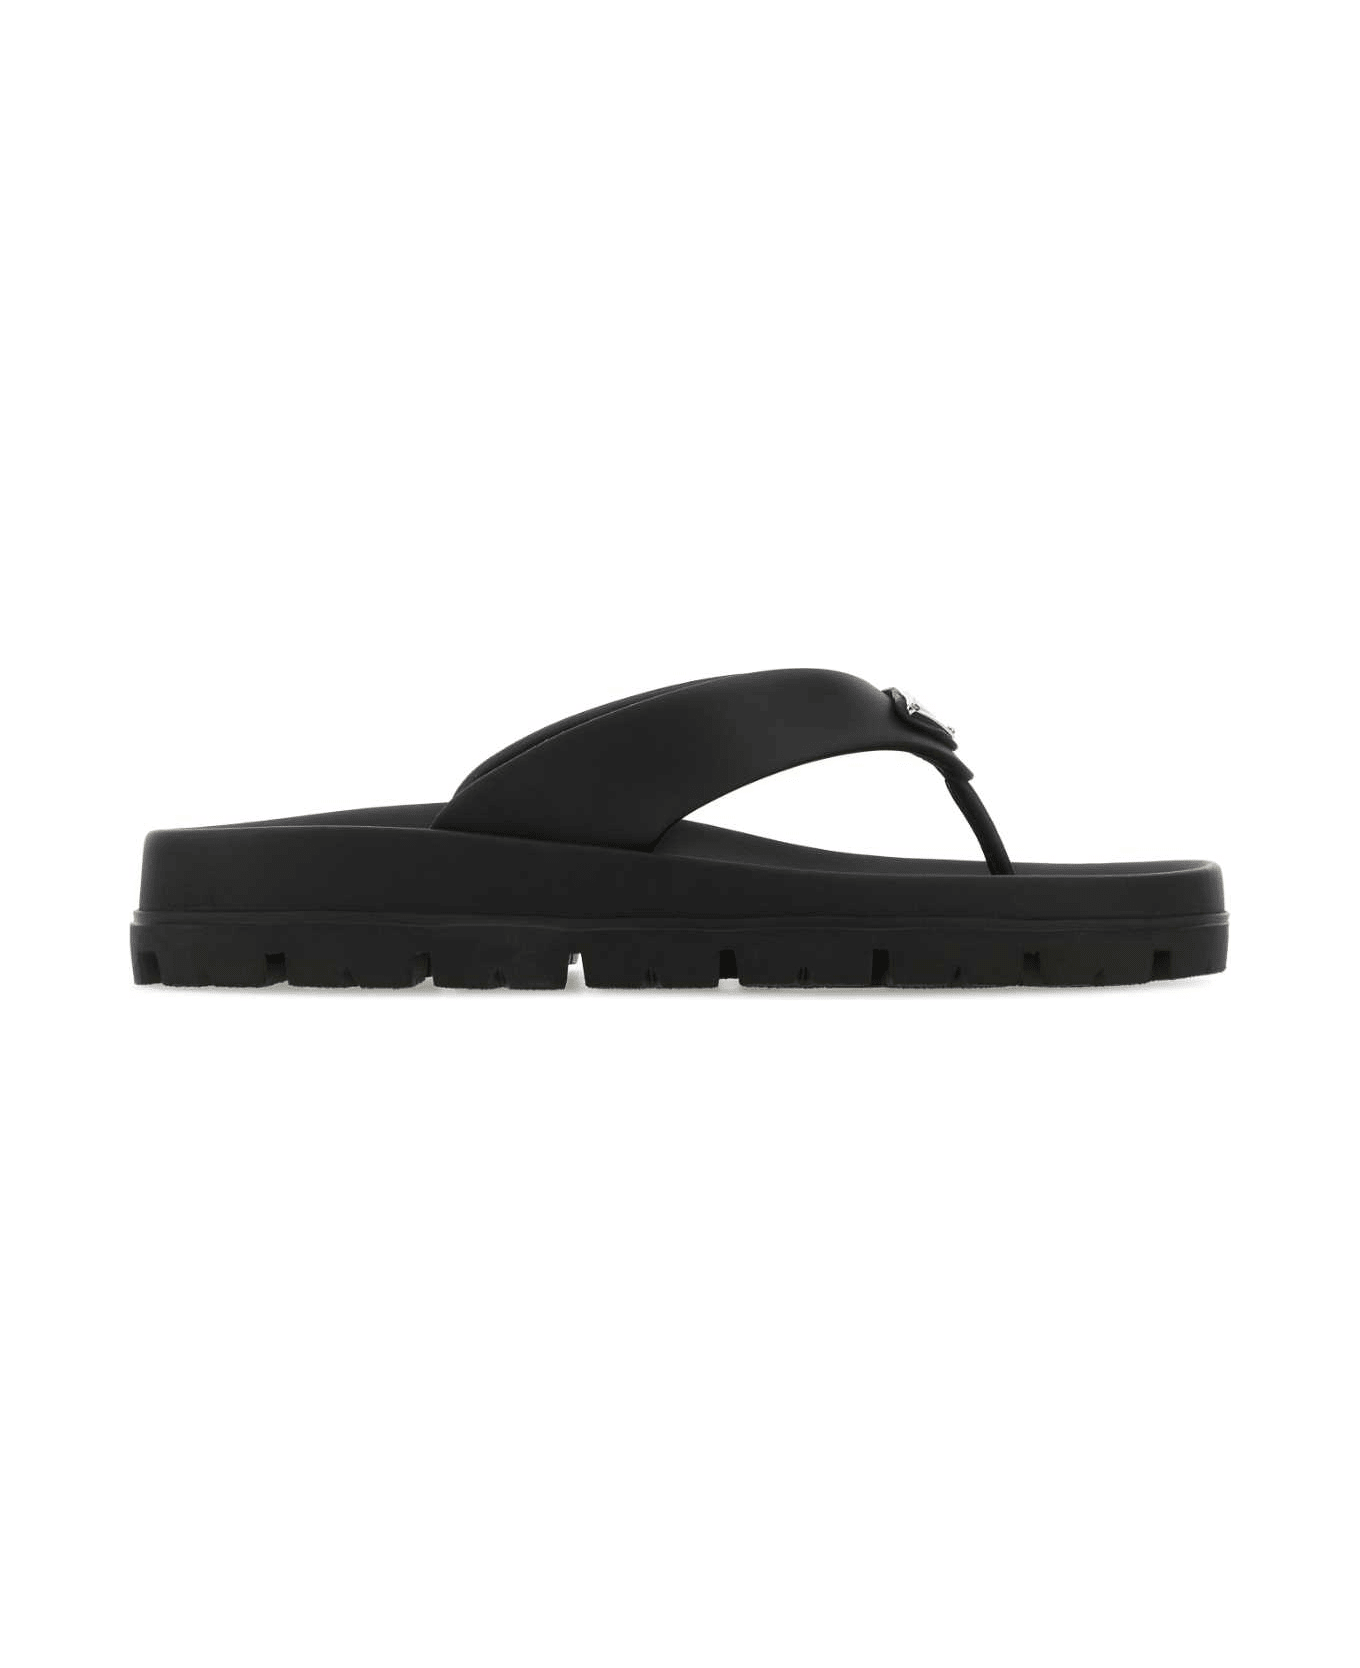 Prada Black Rubber Thong Slippers - NERO1